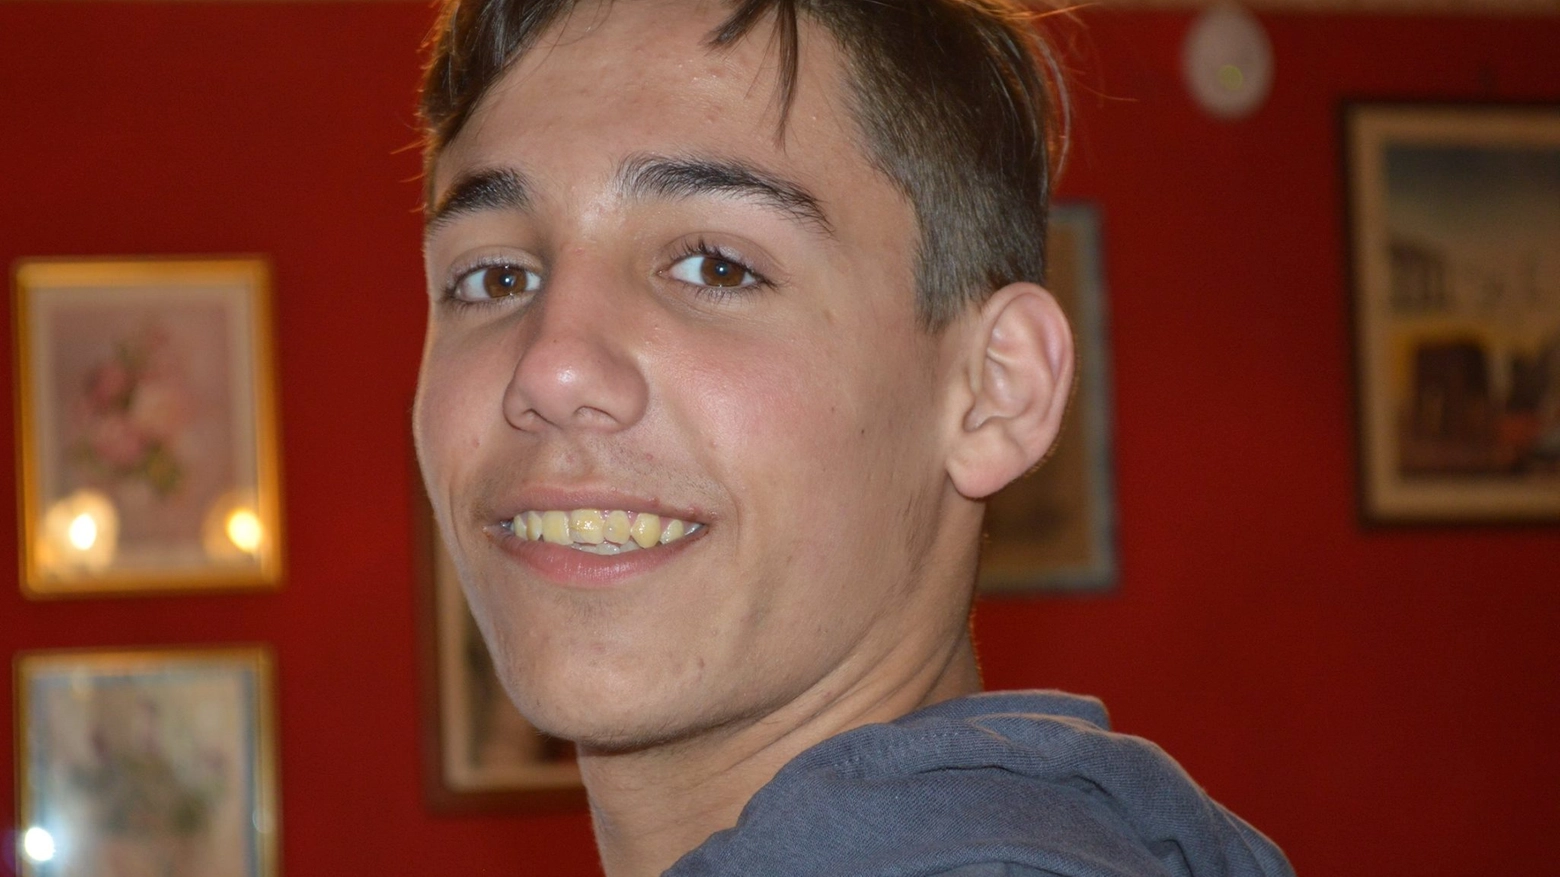 Michele Ruffino si è ucciso a 17 anni lanciandosi da un ponte